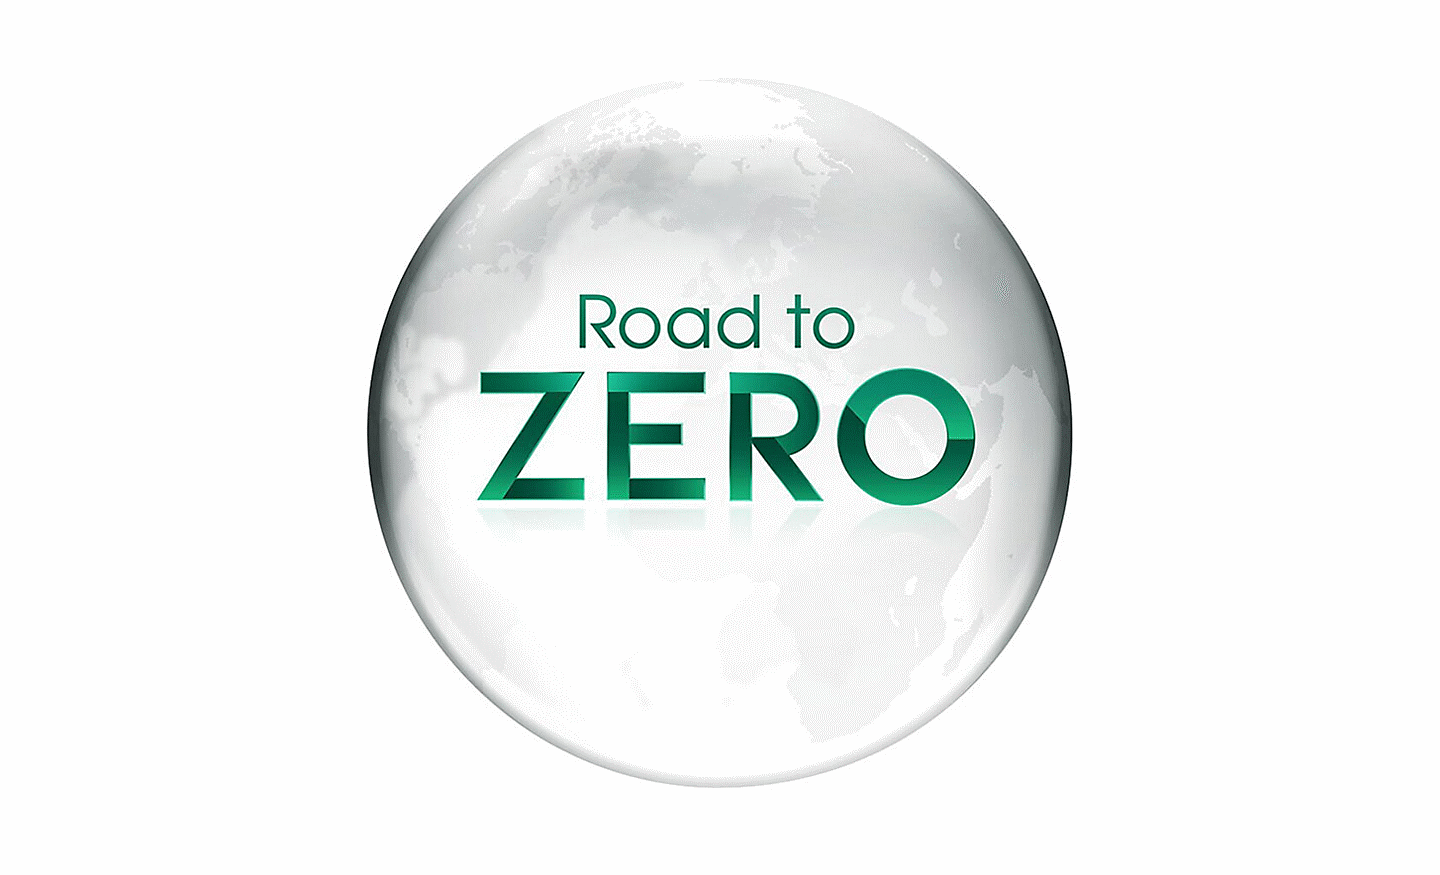 The 'Road to Zero' logo